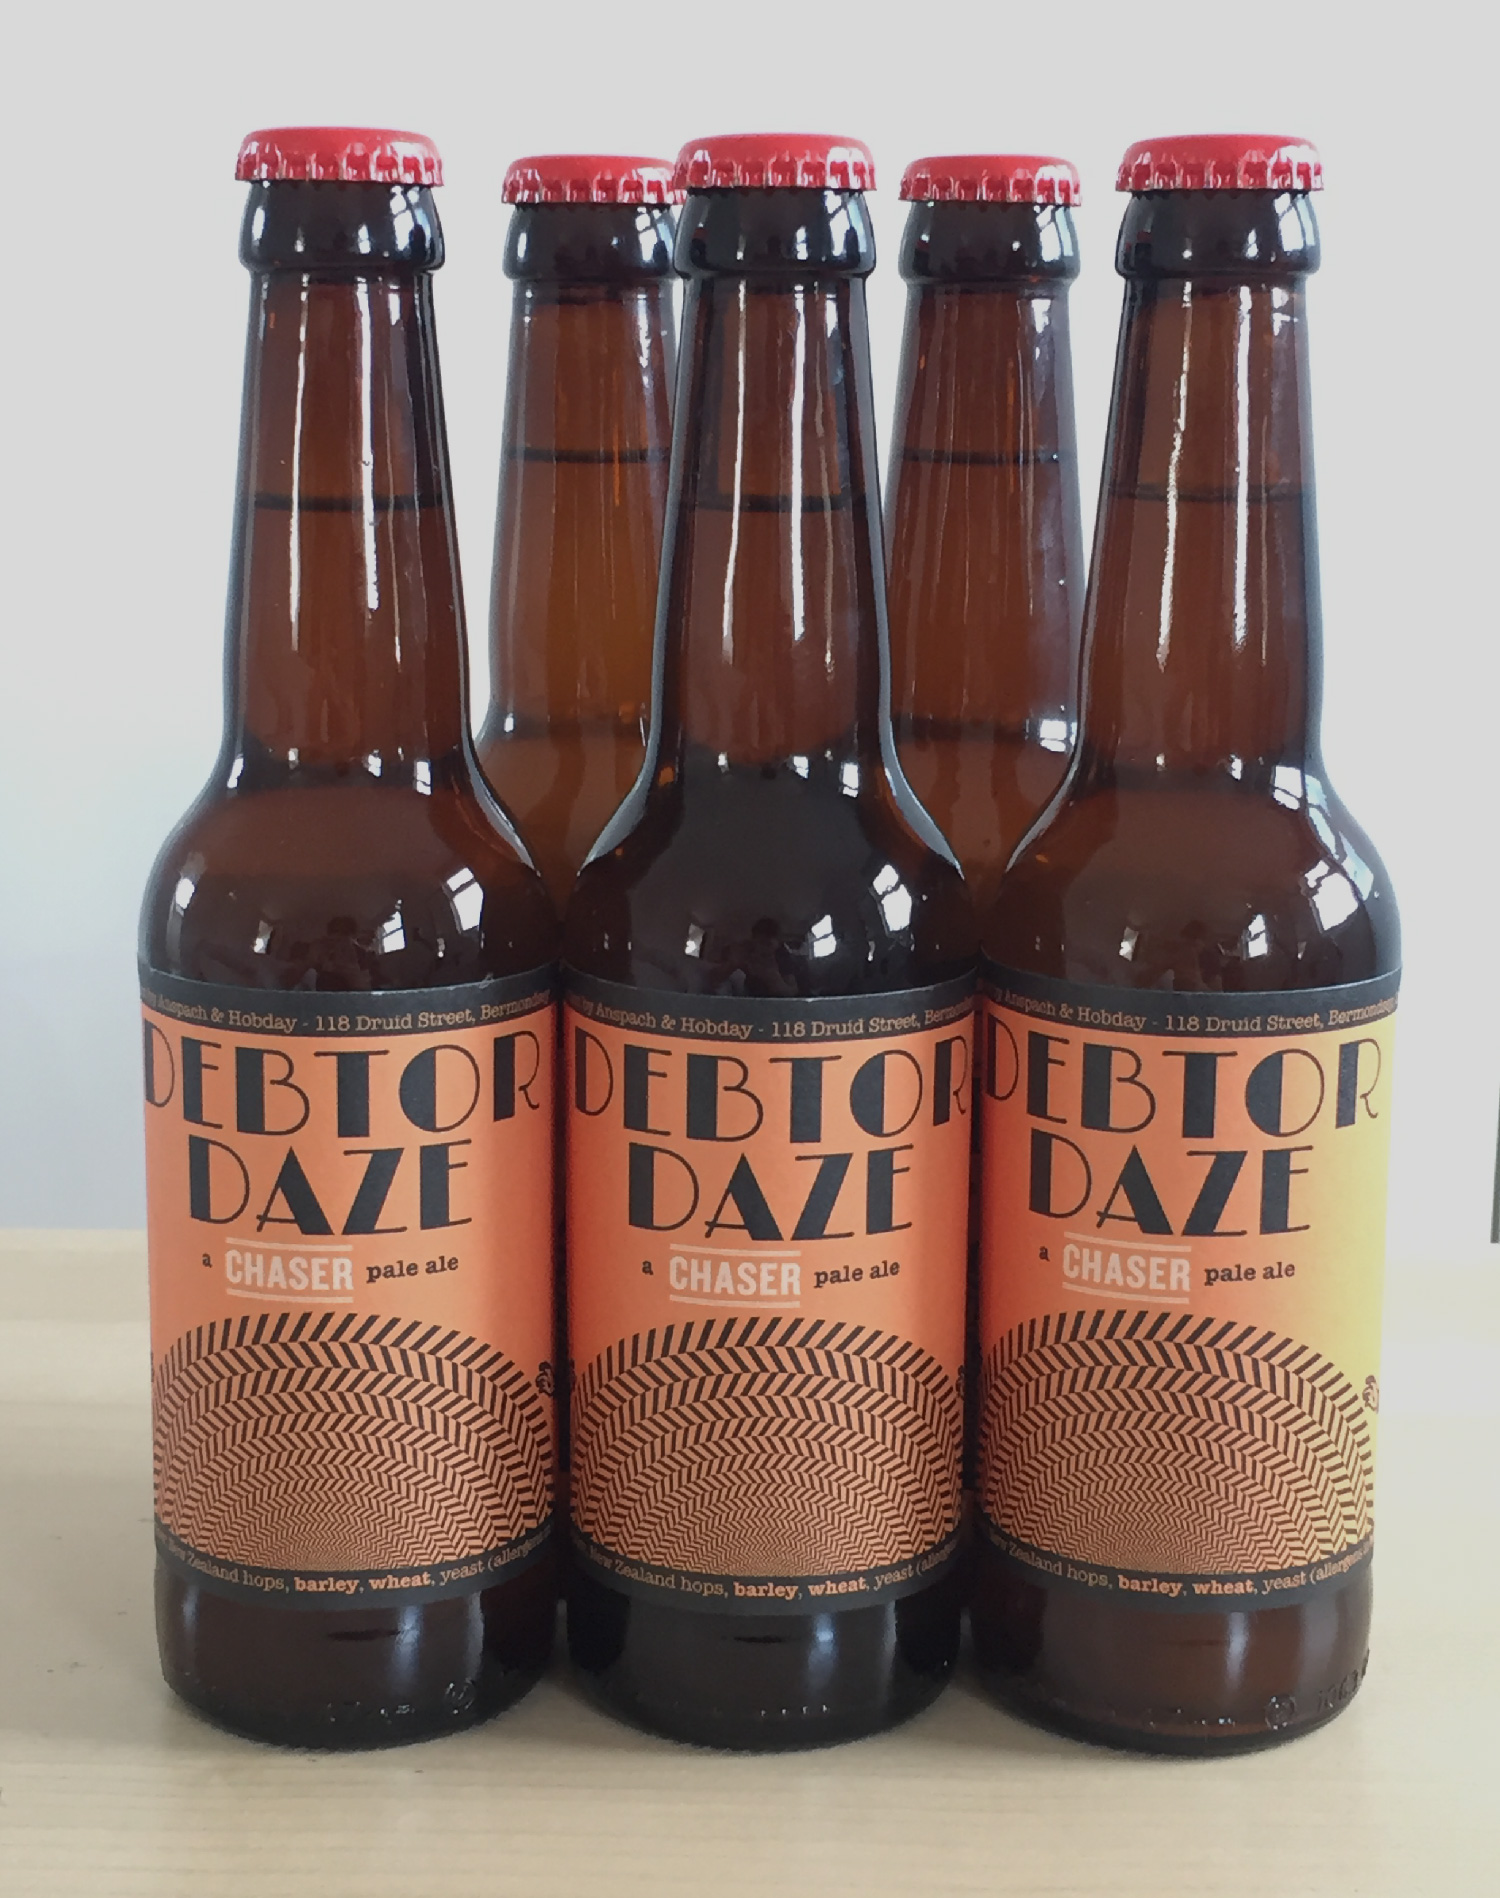 Five bottles of orange-labelled Debtor Daze pale ale lined up